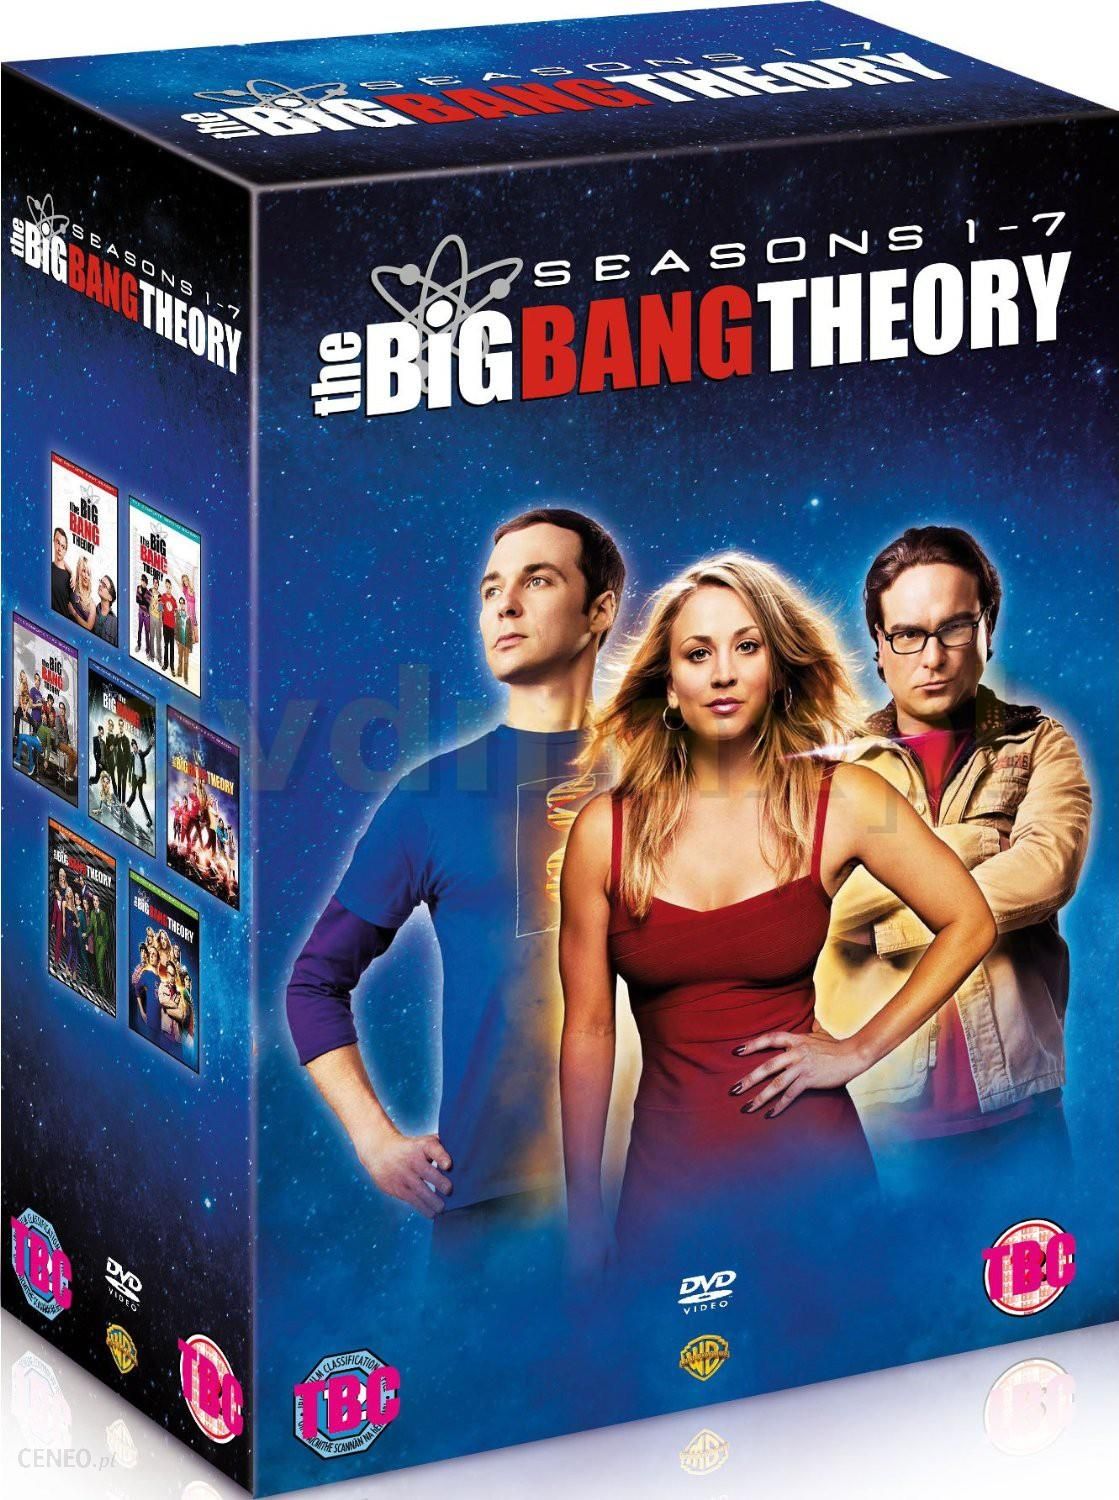 The Big Bang Theory Season 1 7 Teoria Wielkiego Podrywu Sezon 1 7 [en] Dvd Ceny I Opinie